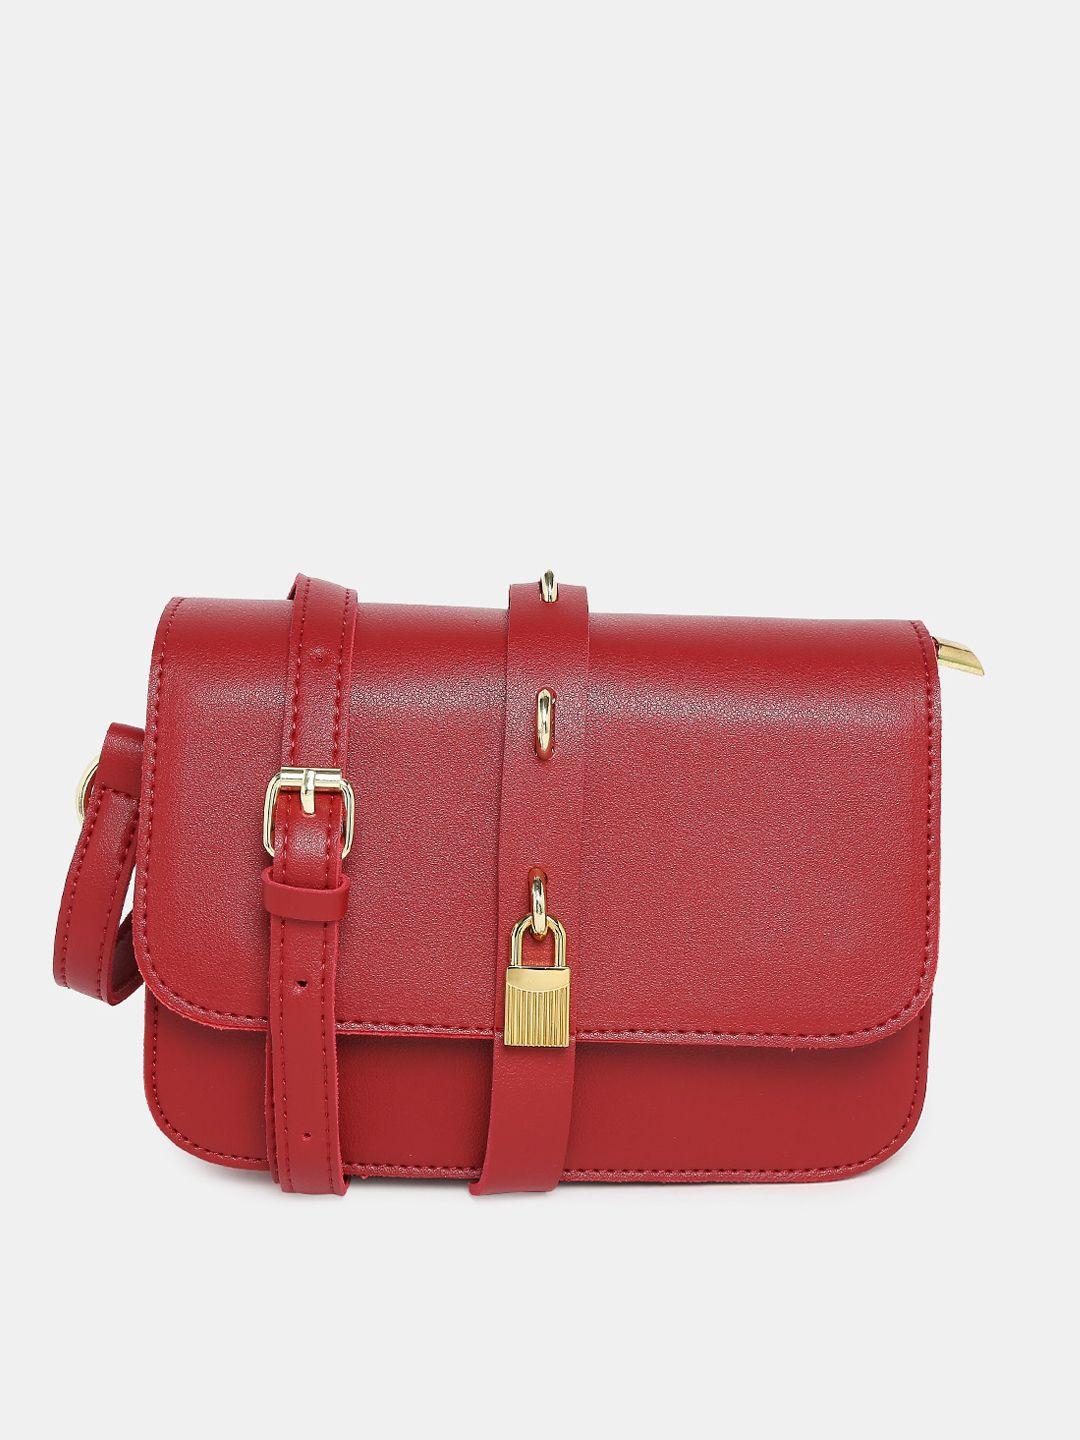 20dresses red structured sling bag